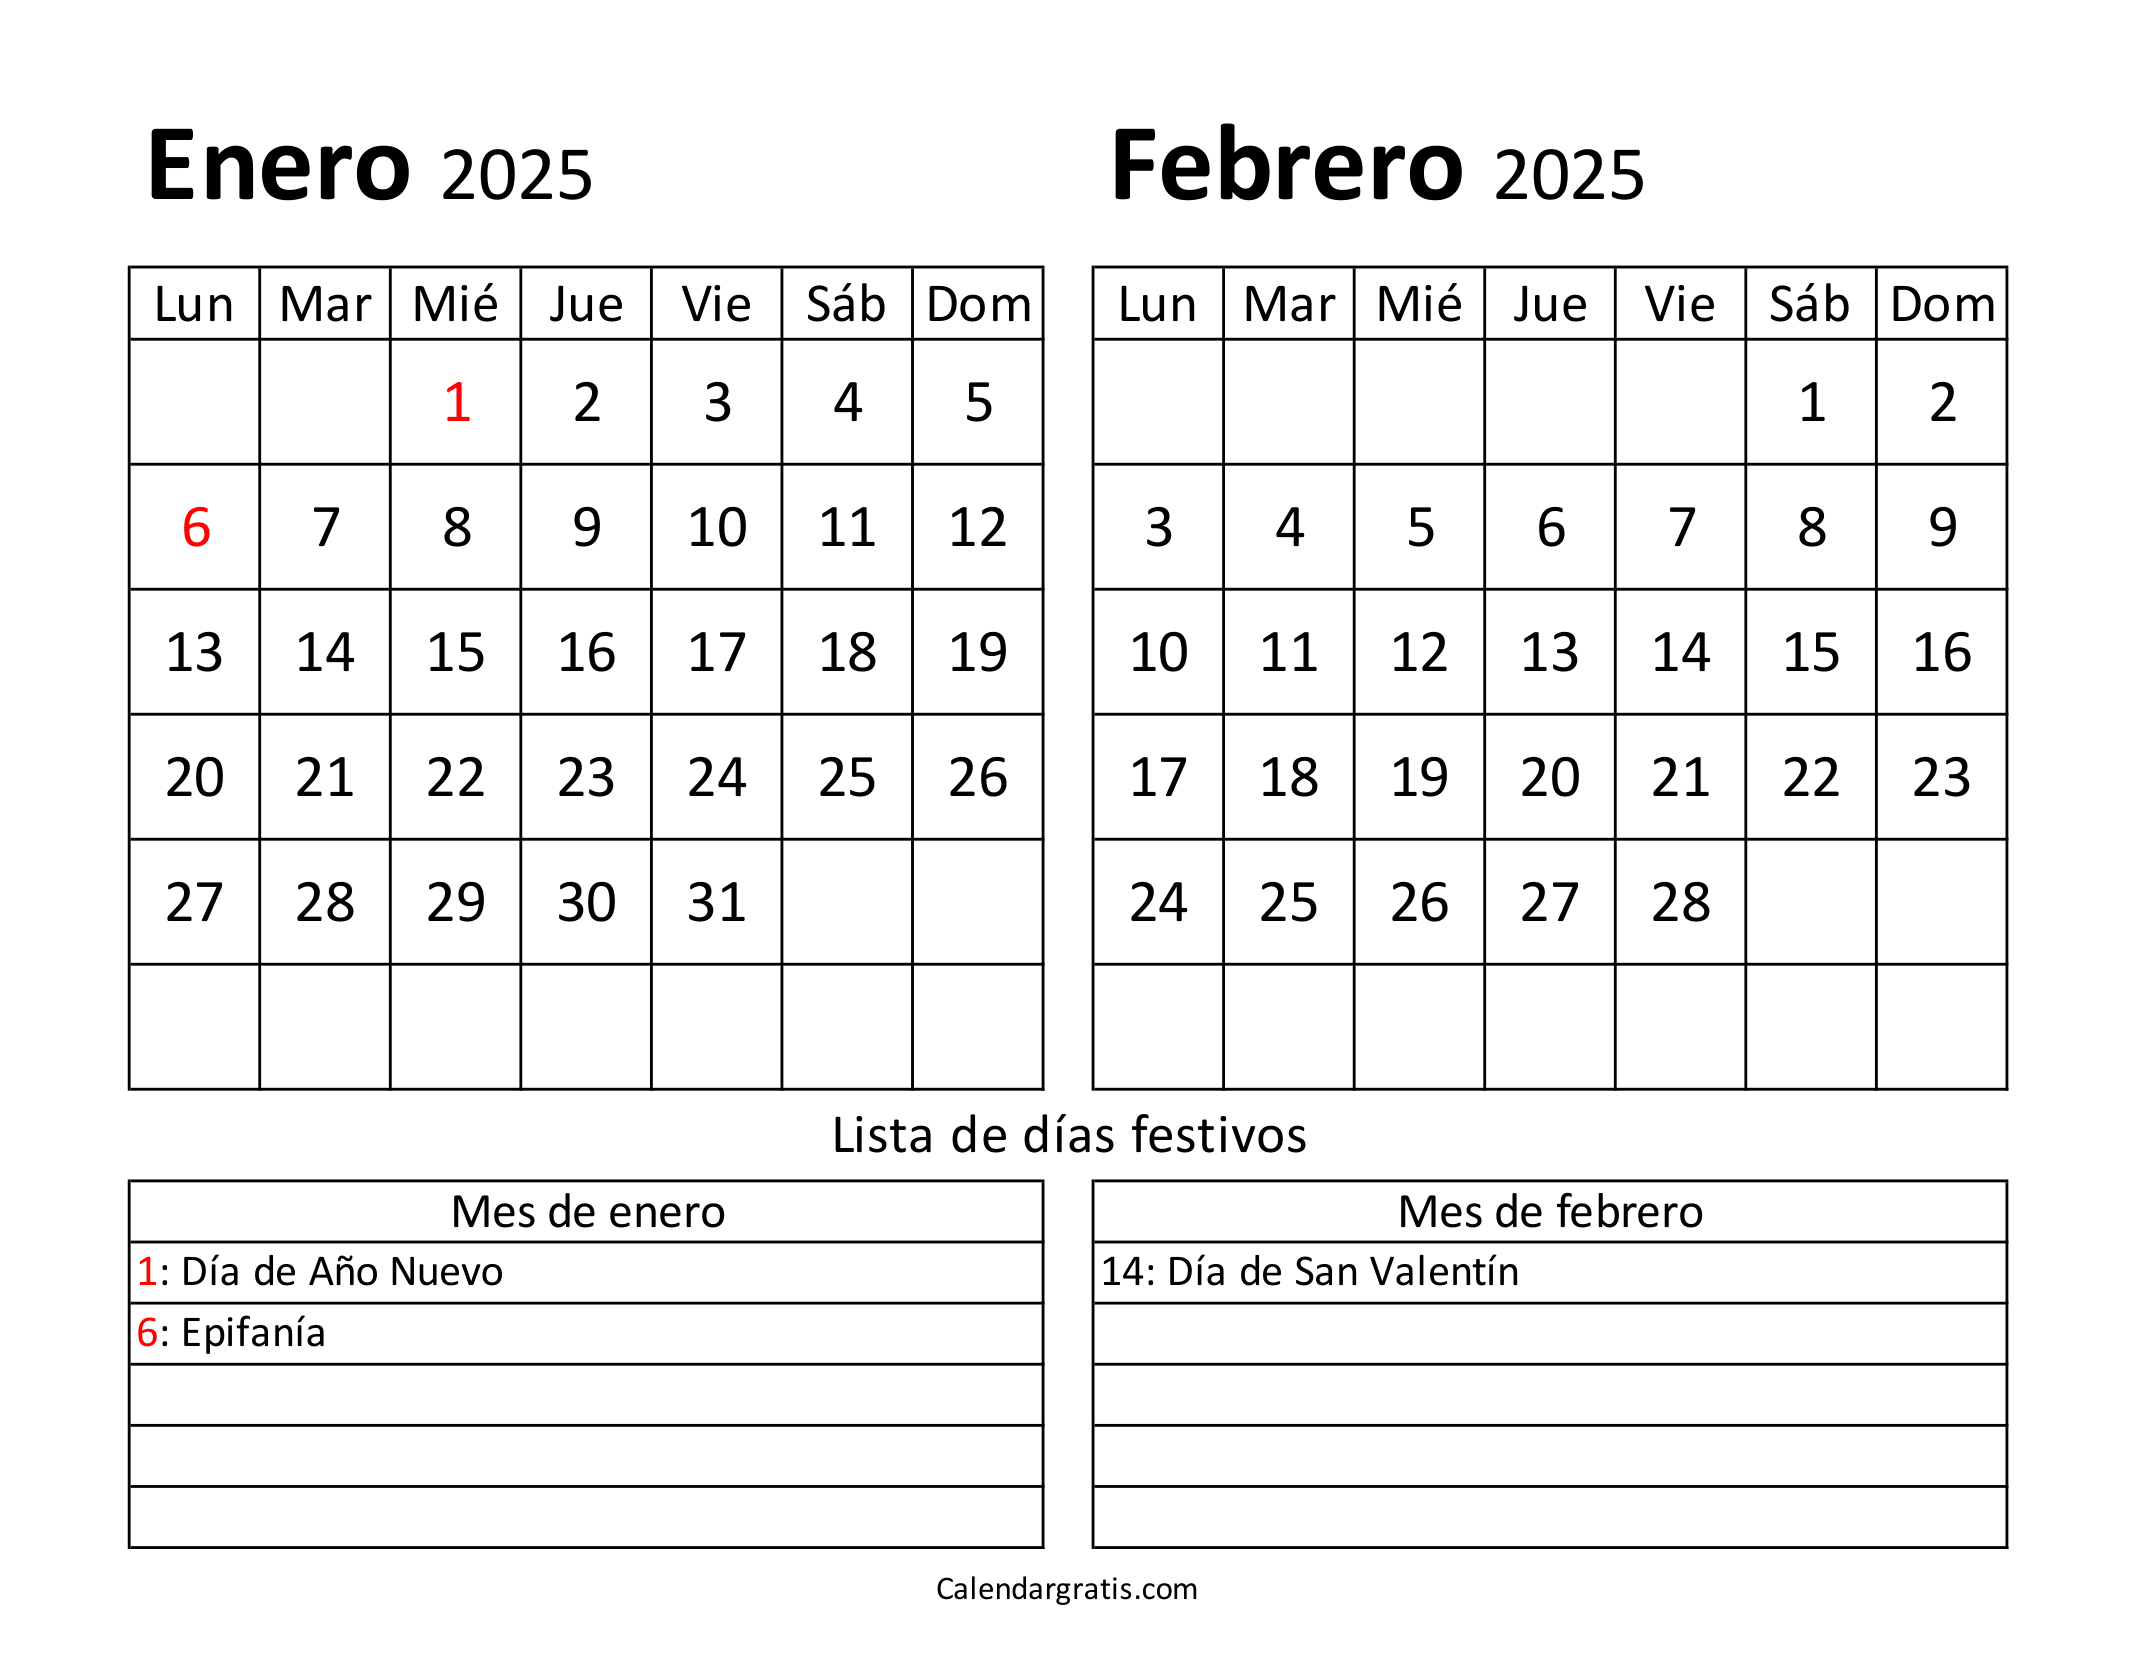 Calendario enero febrero 2025 con festivos